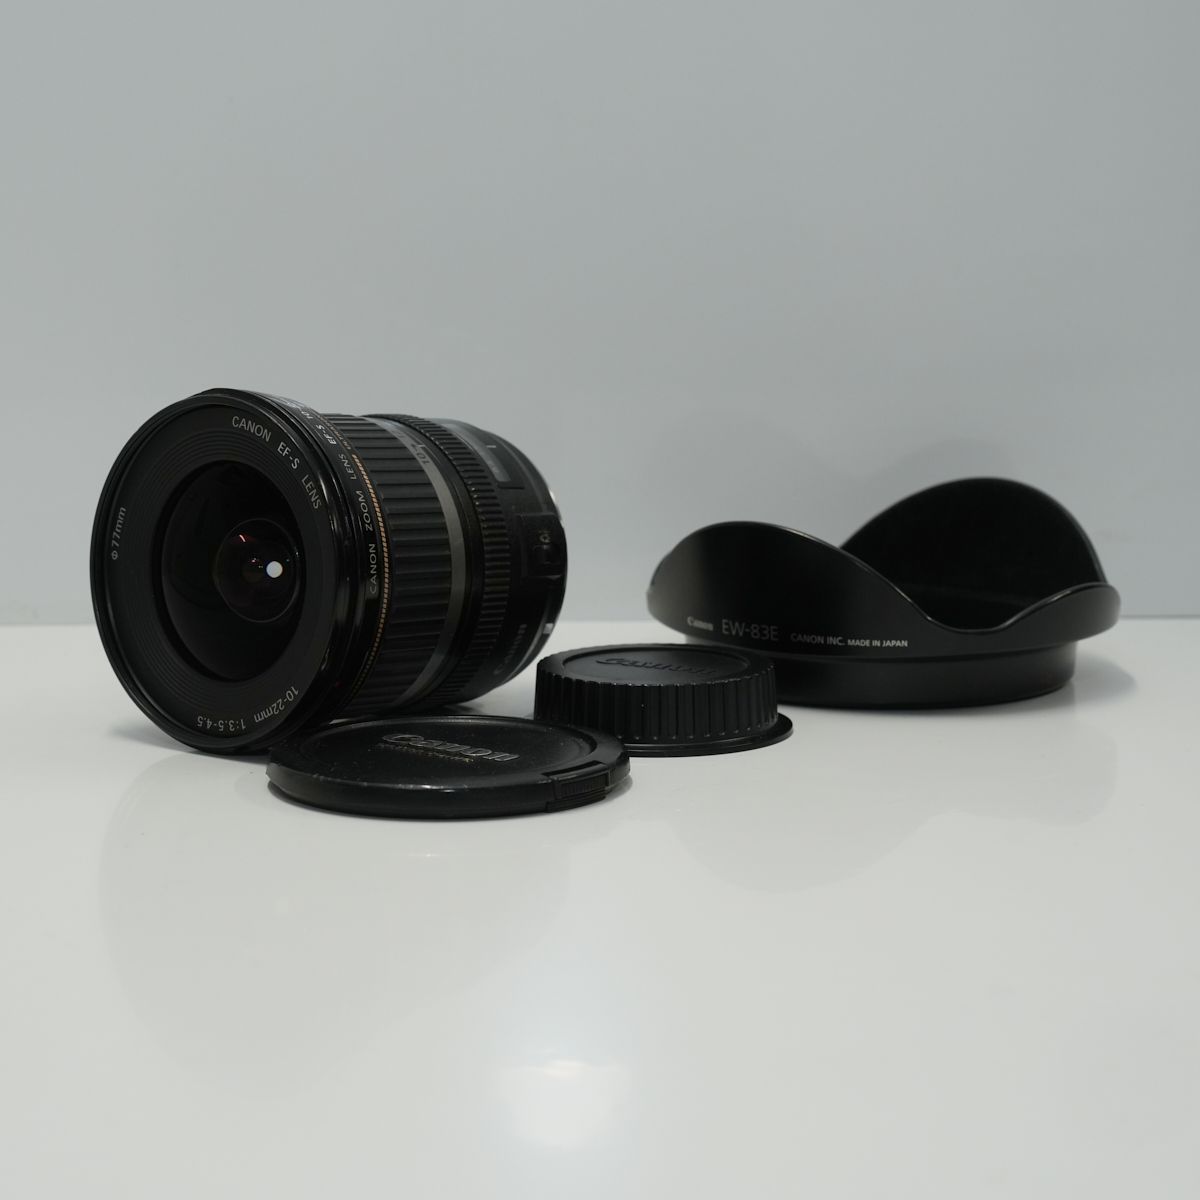 EF-S 10-22mm F3.5-4.5 USM 外箱 レンズフィルター付属 - レンズ(ズーム)